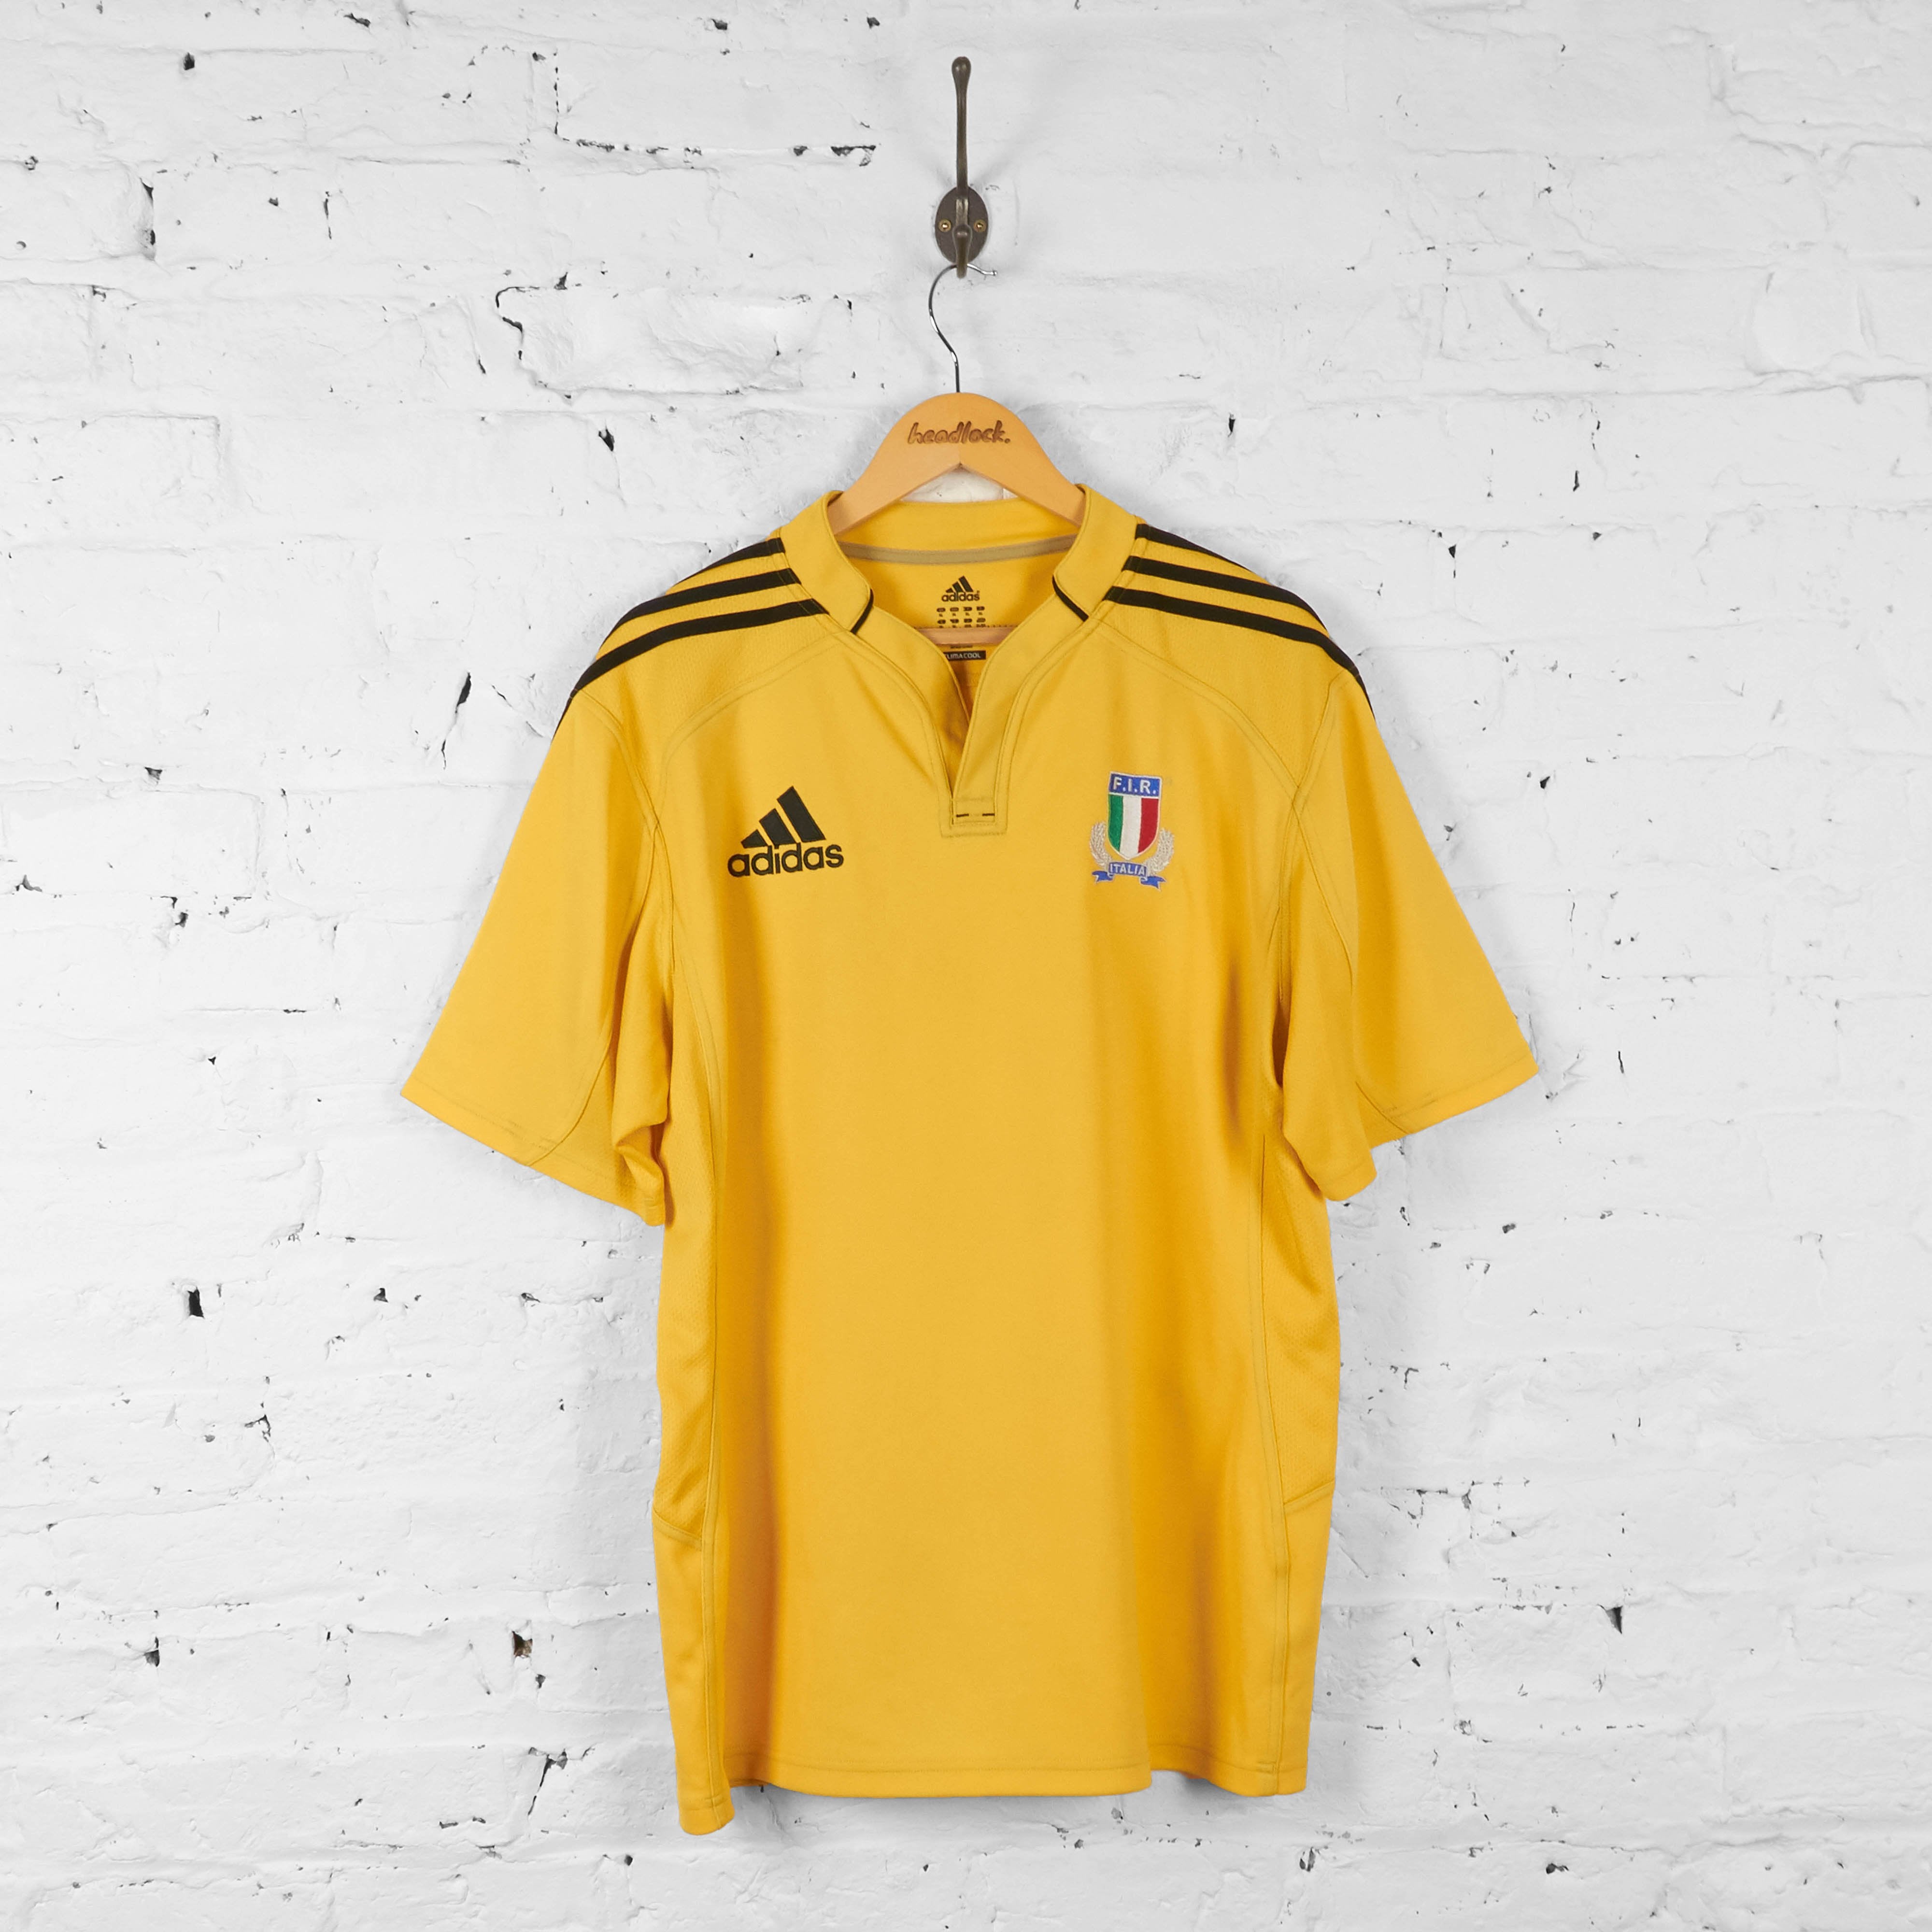 Mening wees onder de indruk uitzending Italy Rugby Adidas Shirt - Yellow - XL – Headlock